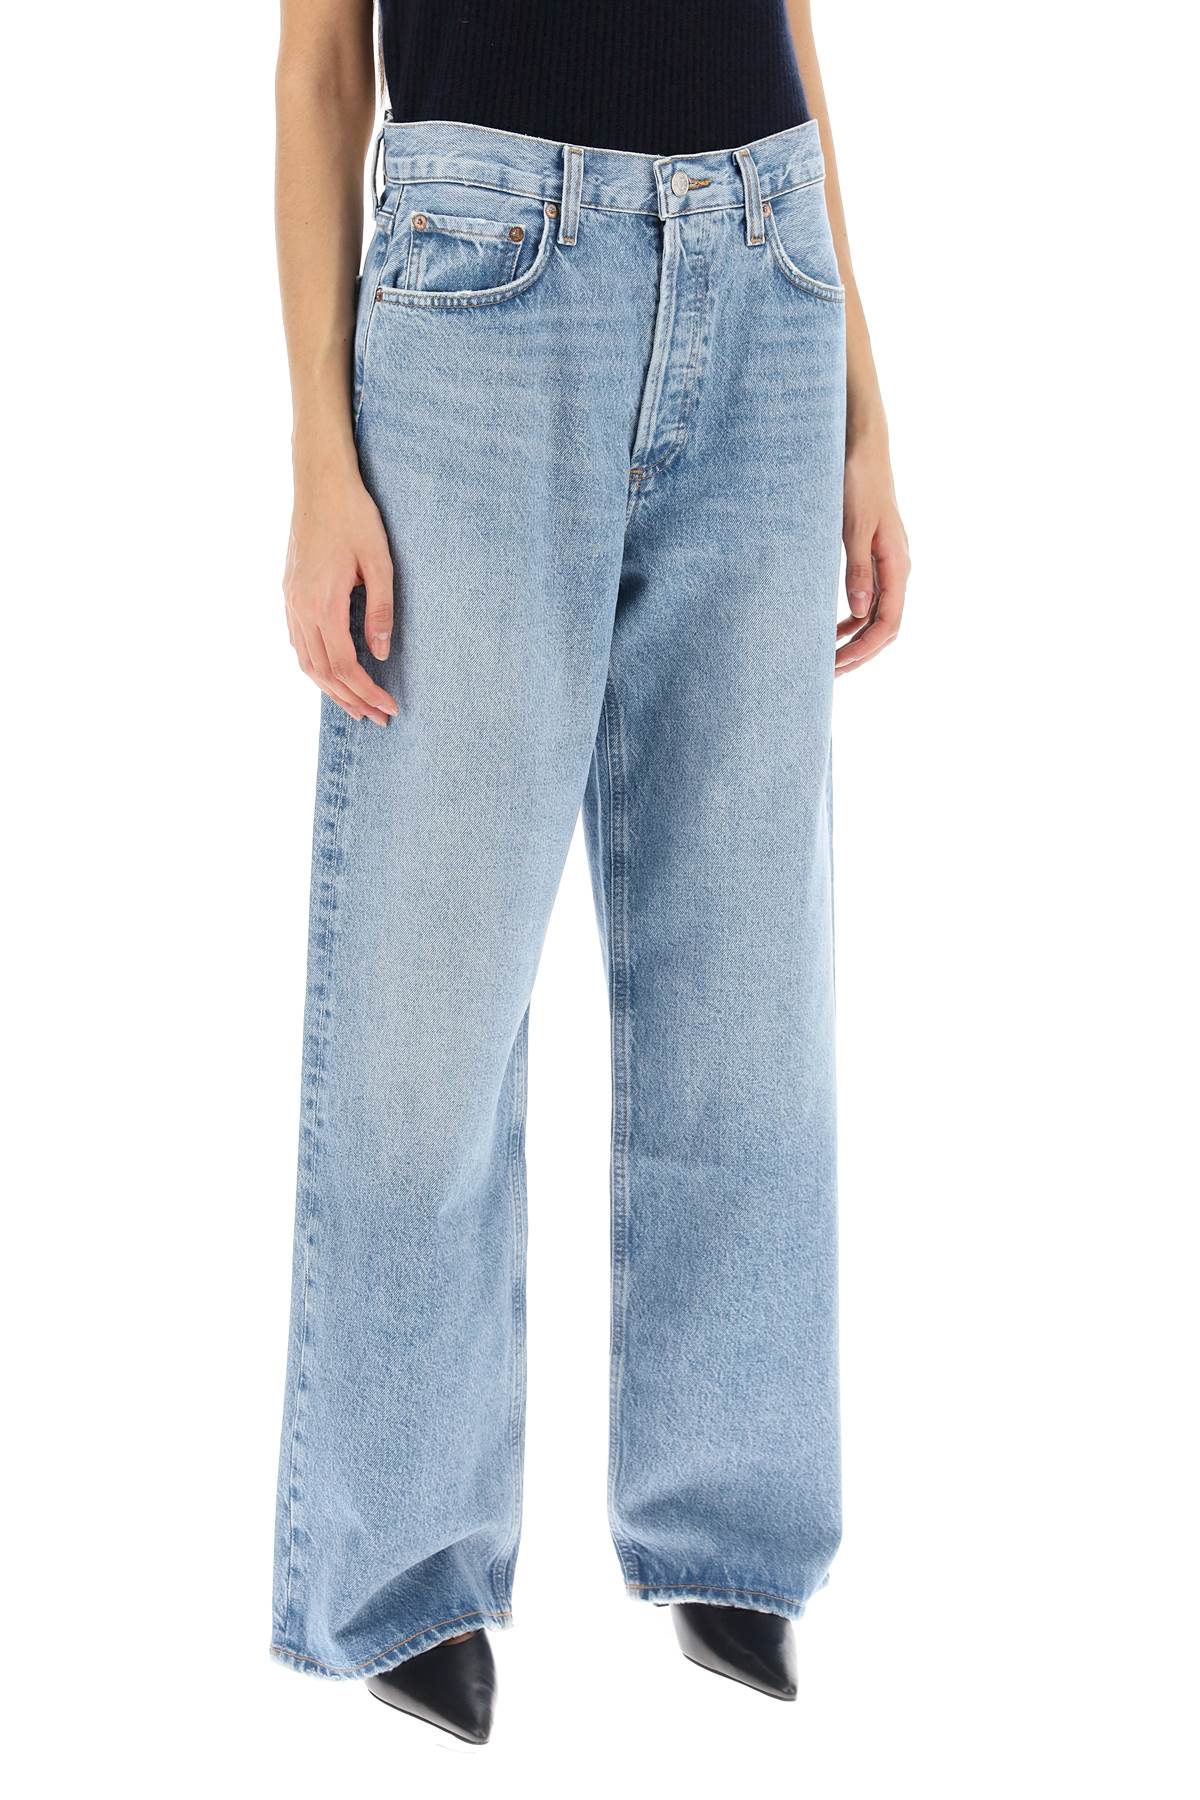 Agolde low slung baggy jeans-1